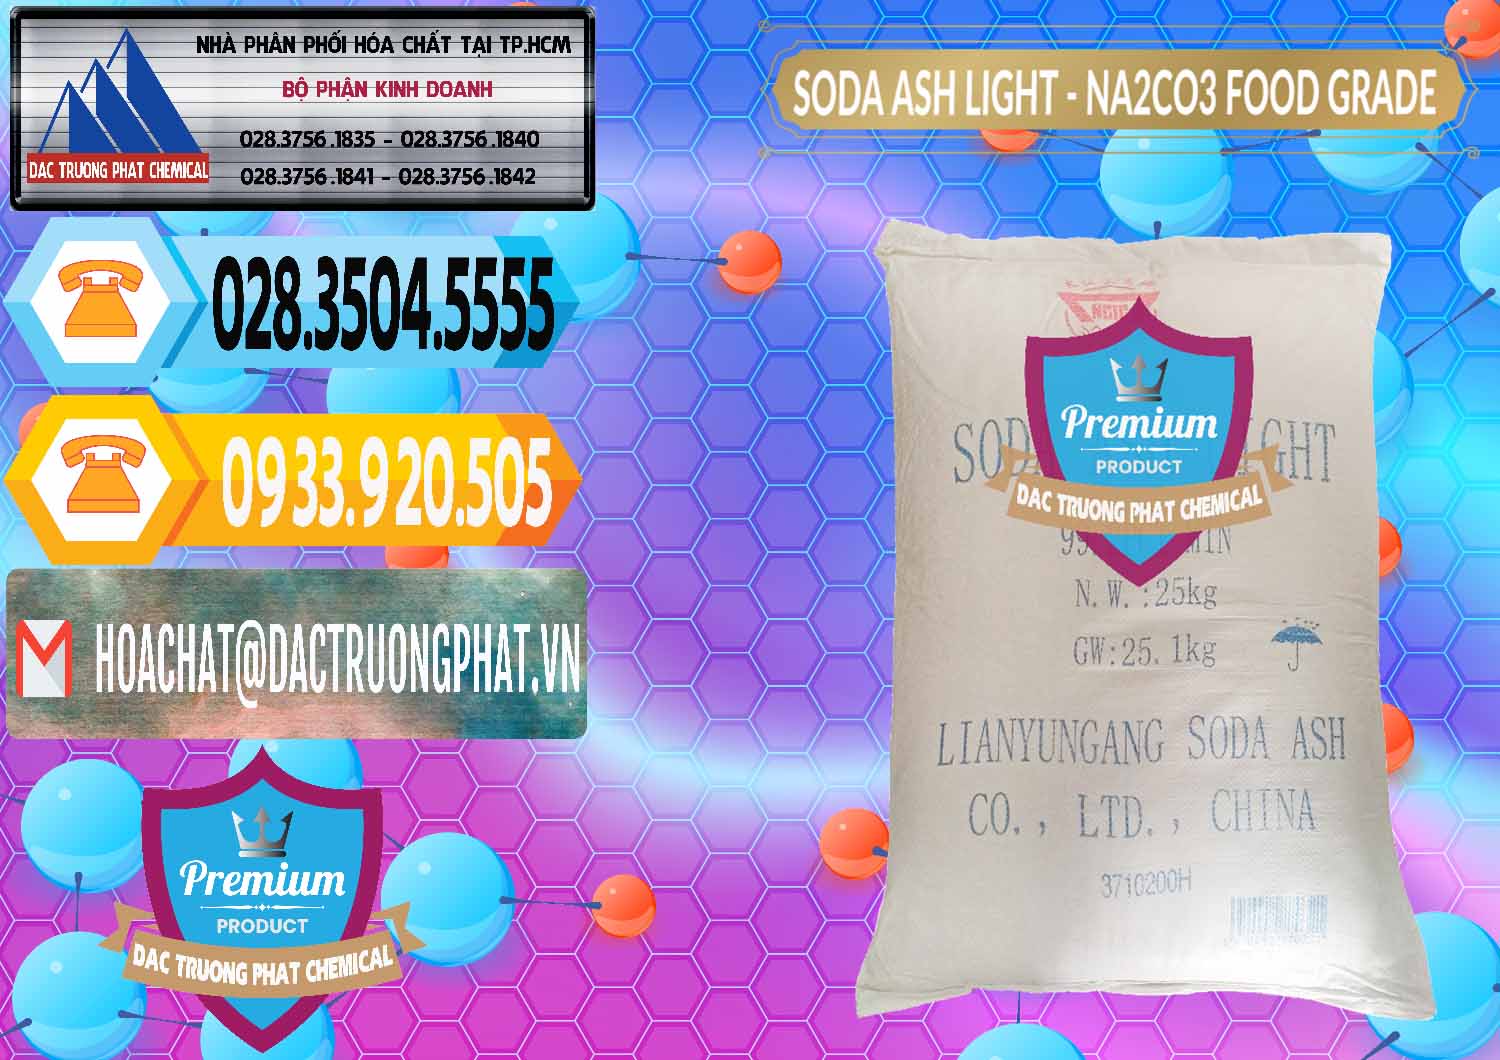 Bán ( phân phối ) Soda Ash Light – NA2CO3 Food Grade Trung Quốc China - 0127 - Cty cung cấp - kinh doanh hóa chất tại TP.HCM - hoachattayrua.net